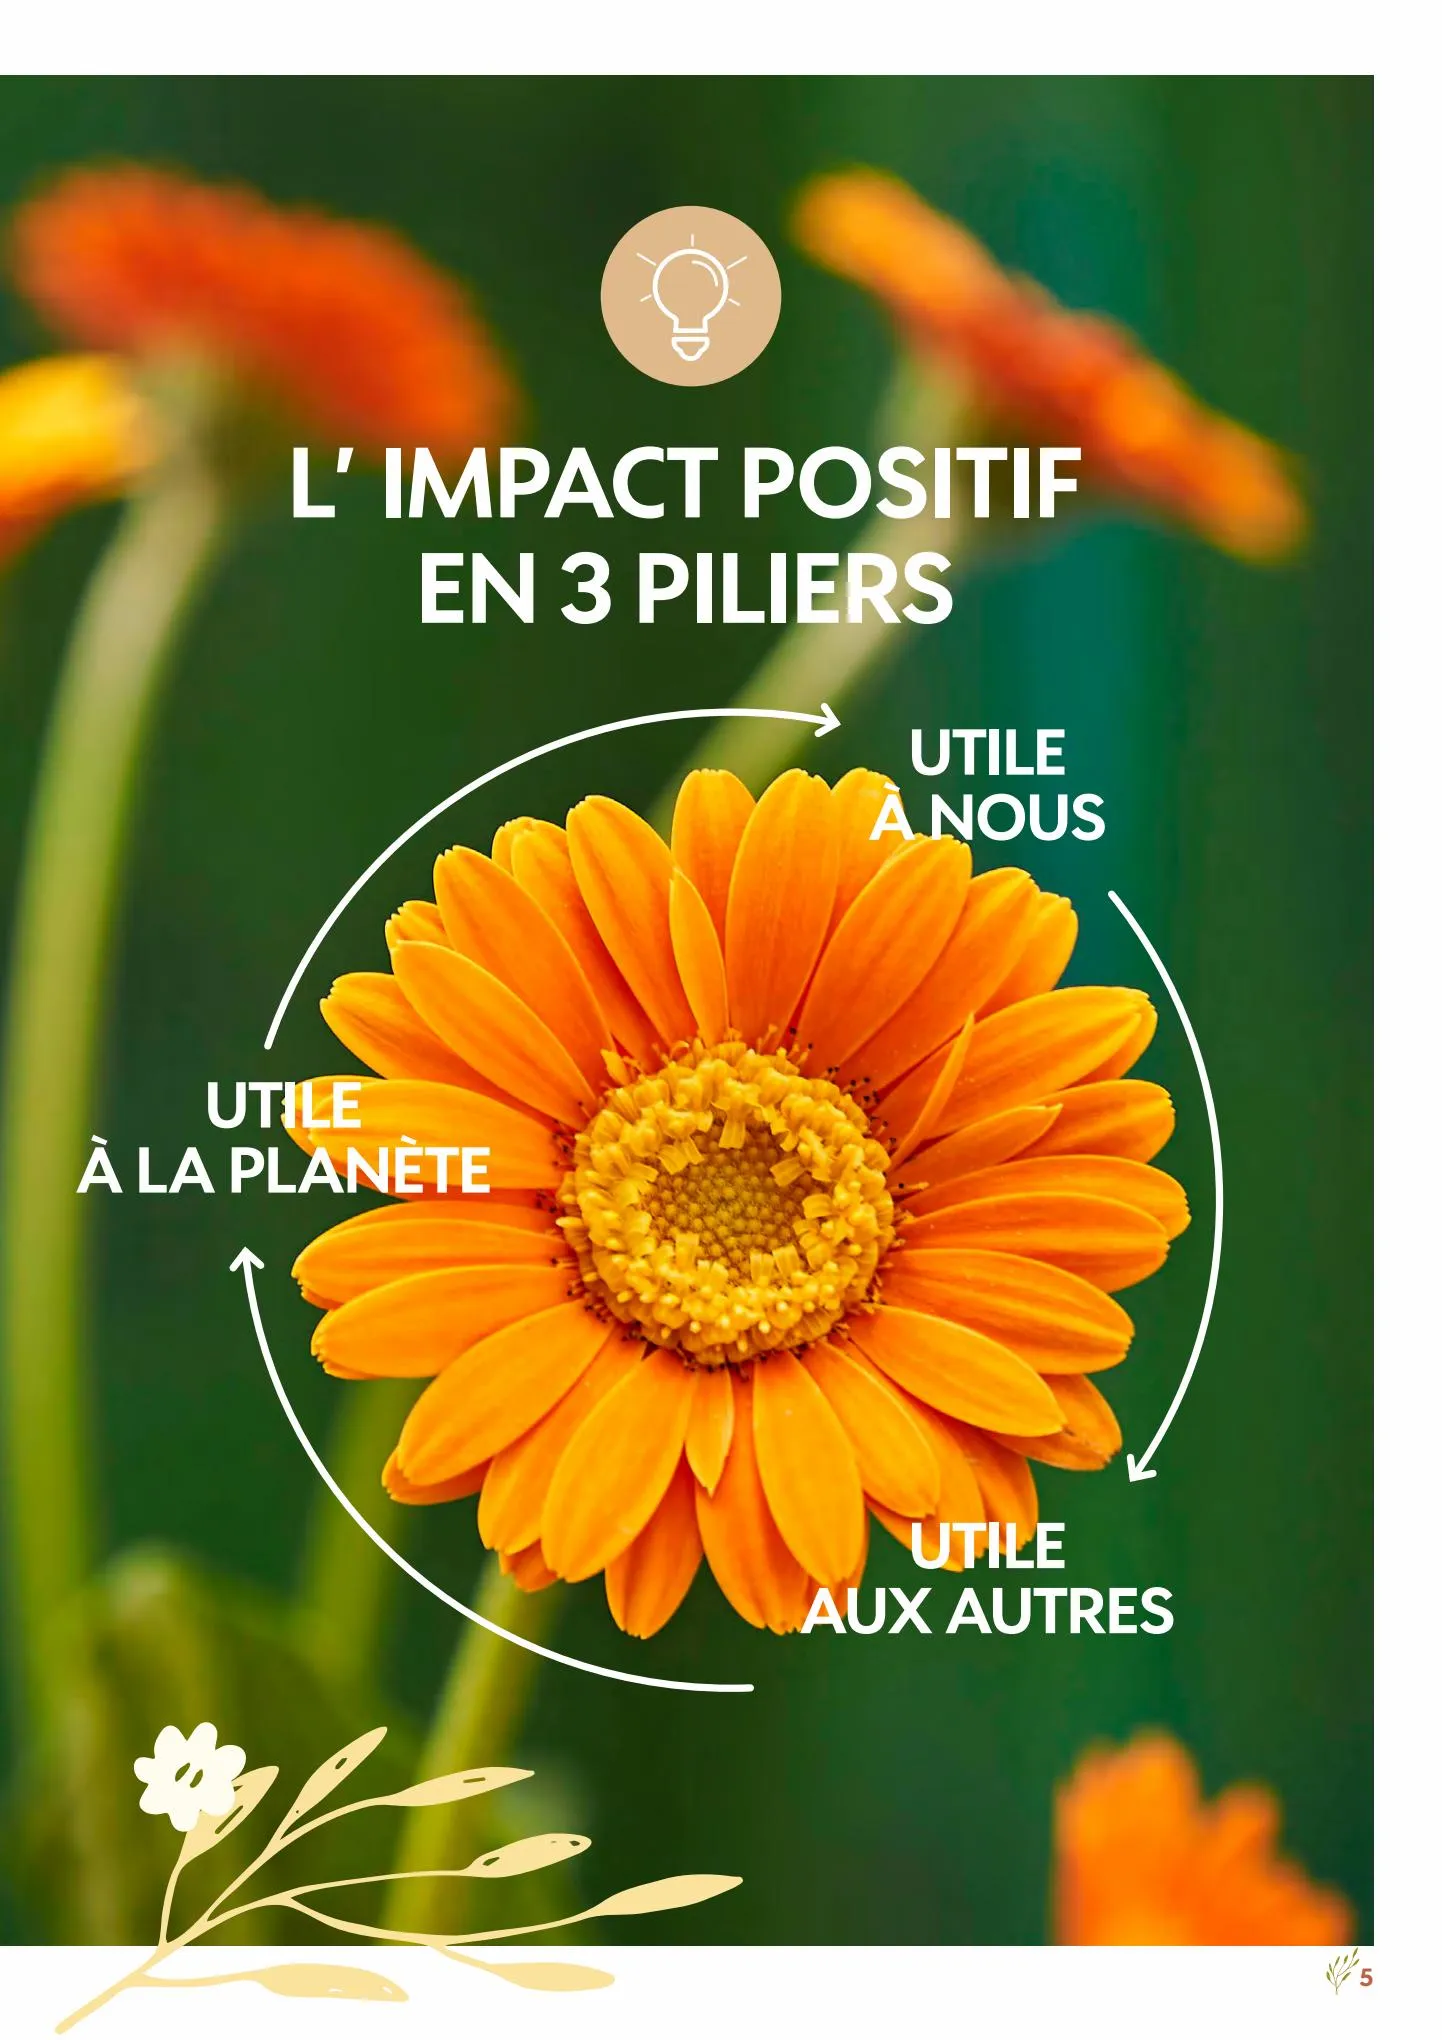 Catalogue Impacts Positifs Truffaut, page 00005